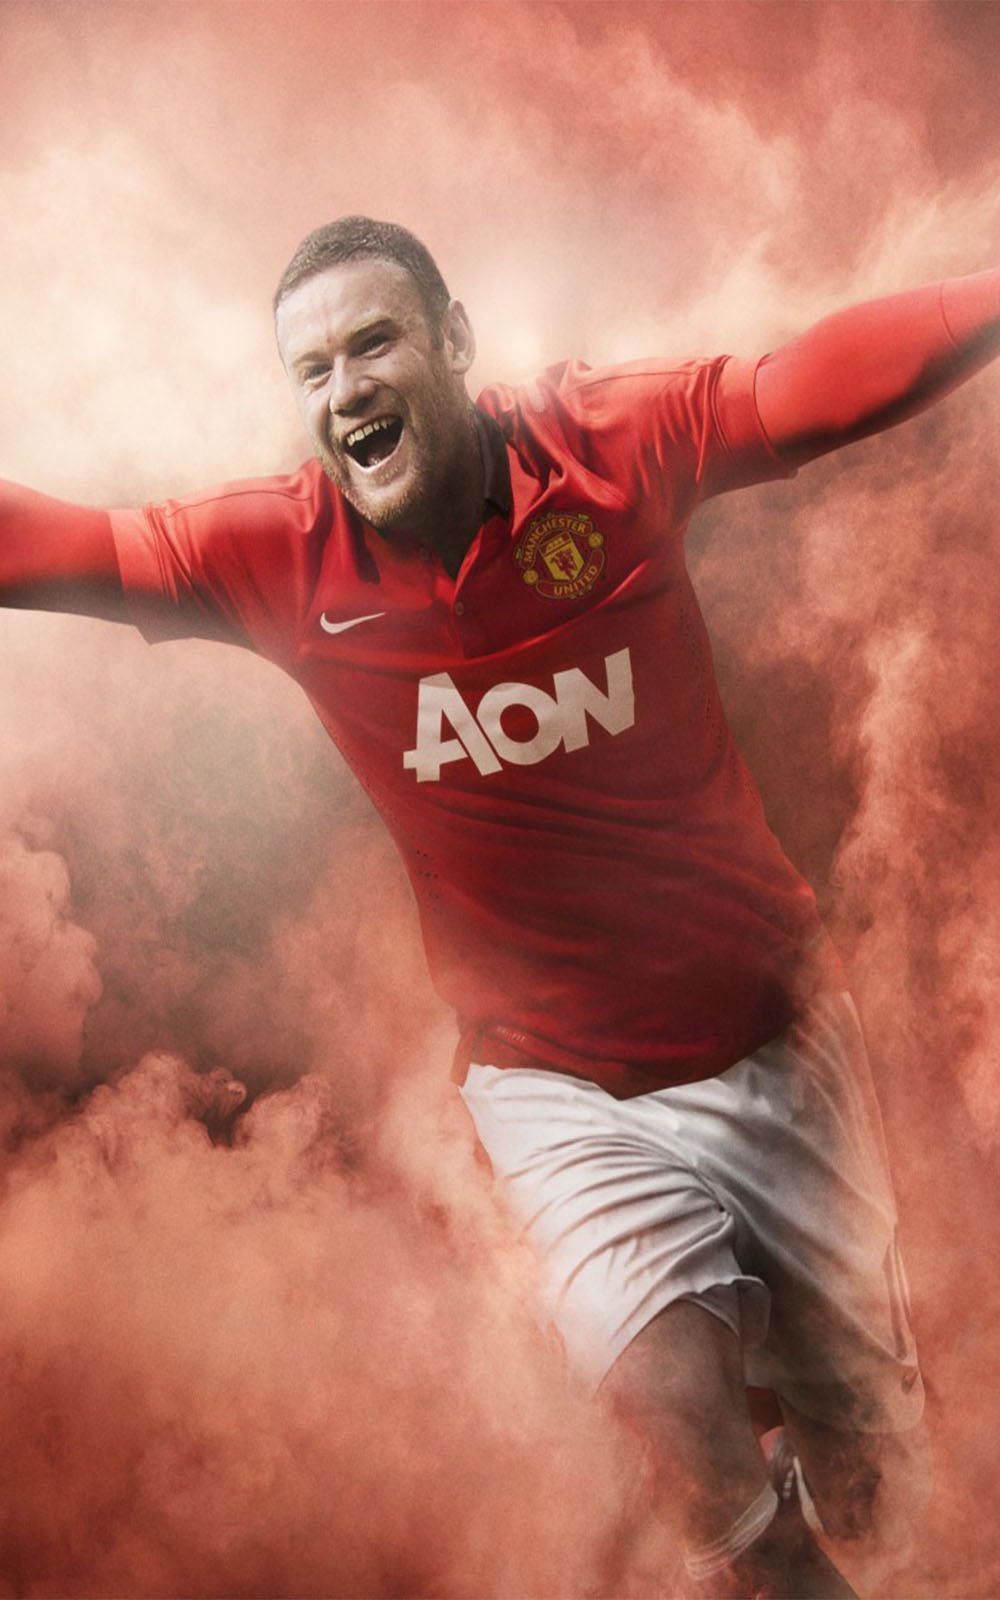 Download Wallpaper - Wayne Rooney Hd Iphone , HD Wallpaper & Backgrounds